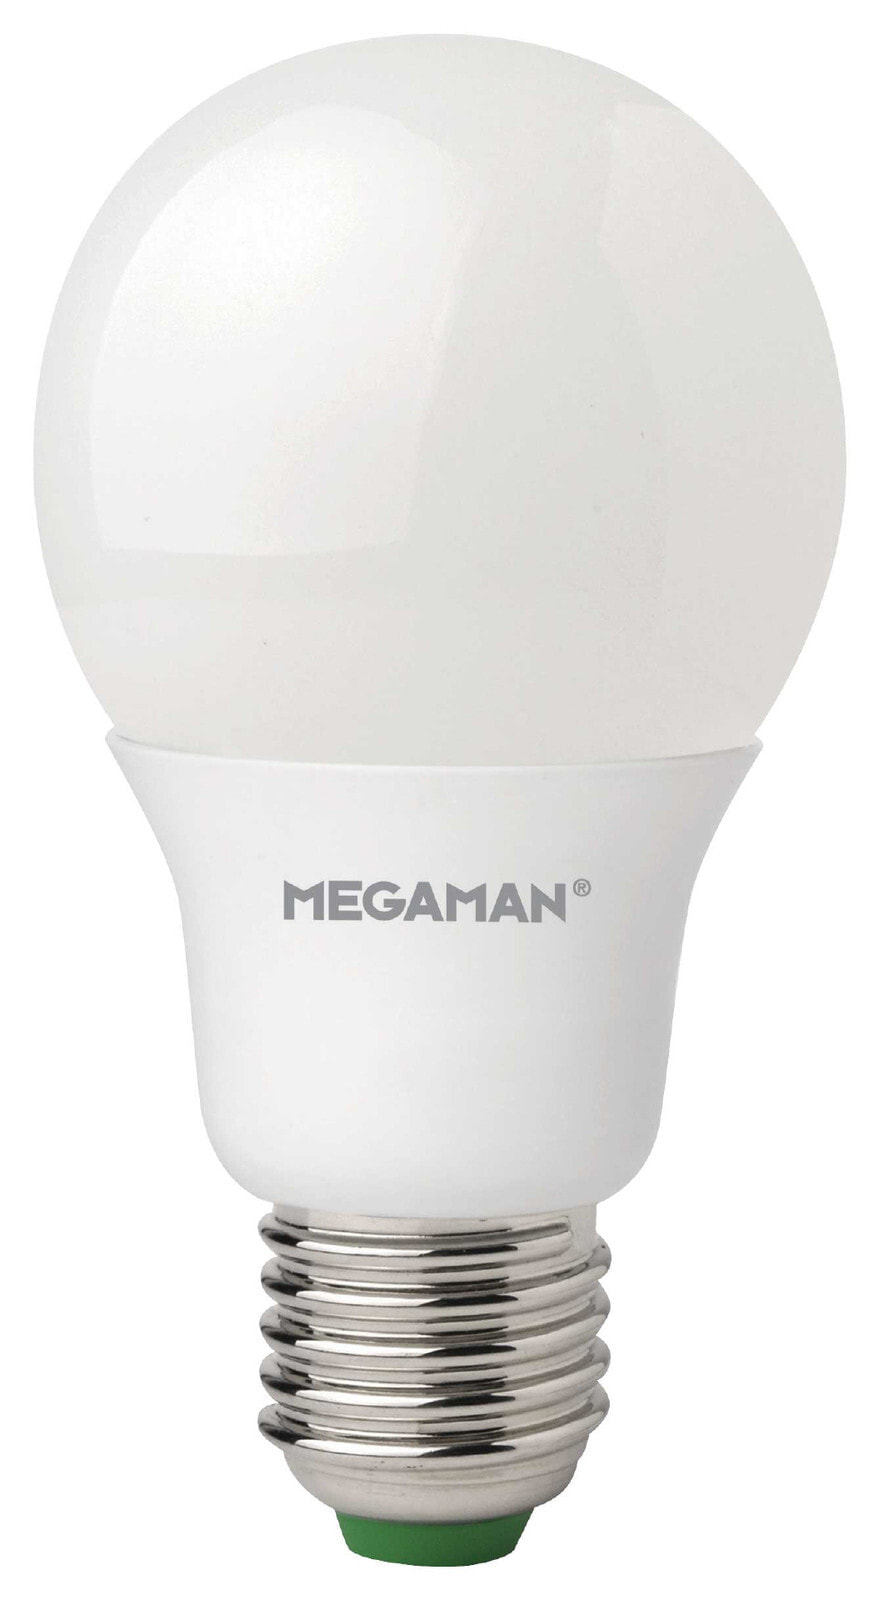 Megaman MM21046 LED лампа 11 W E27 A+